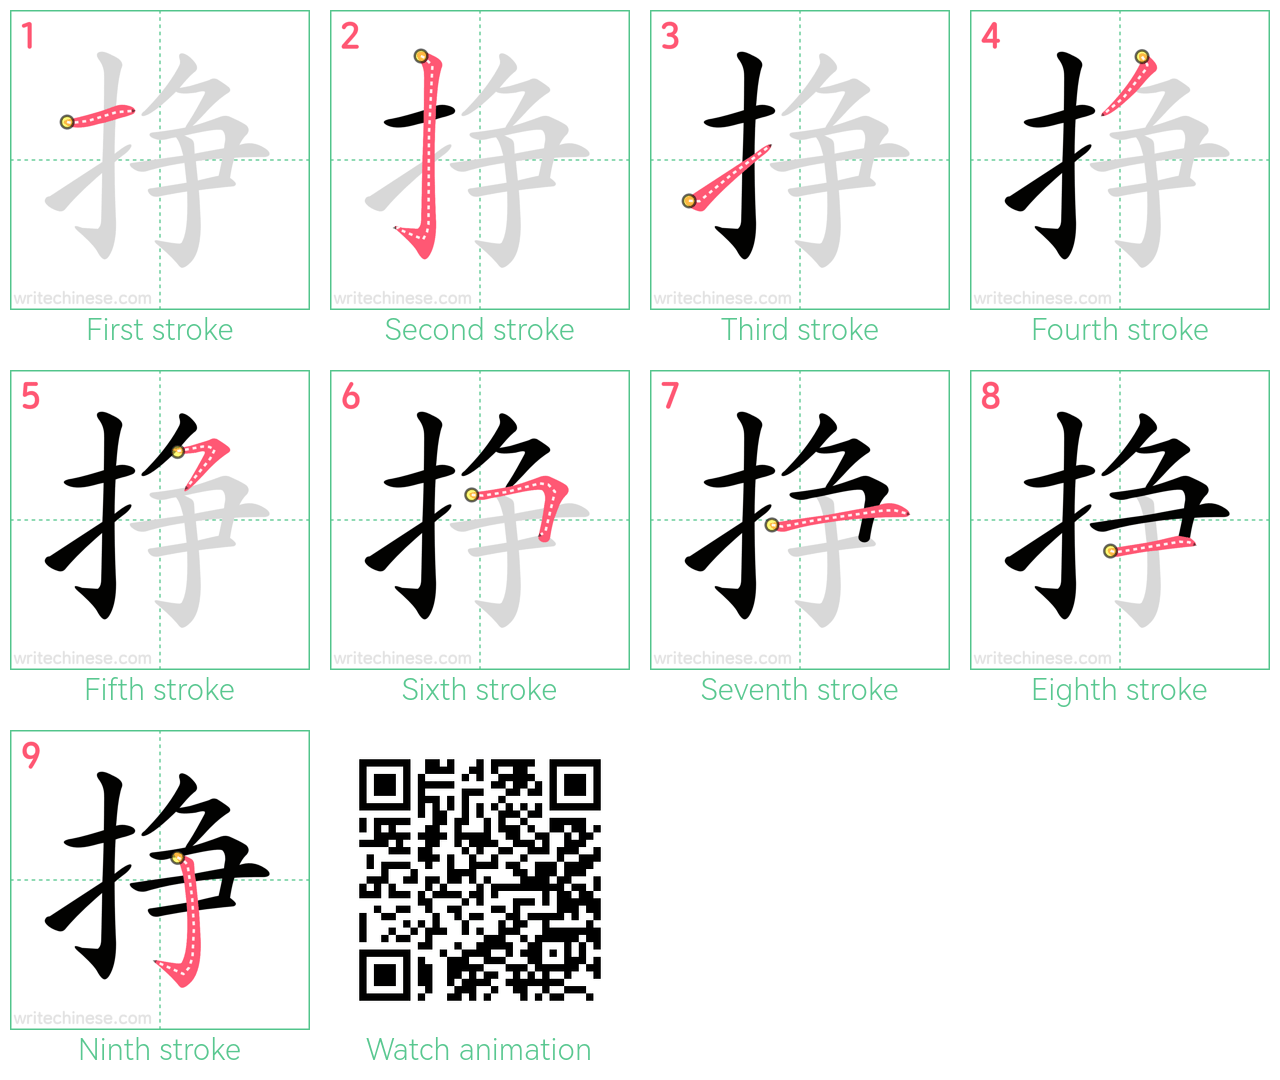 挣 step-by-step stroke order diagrams